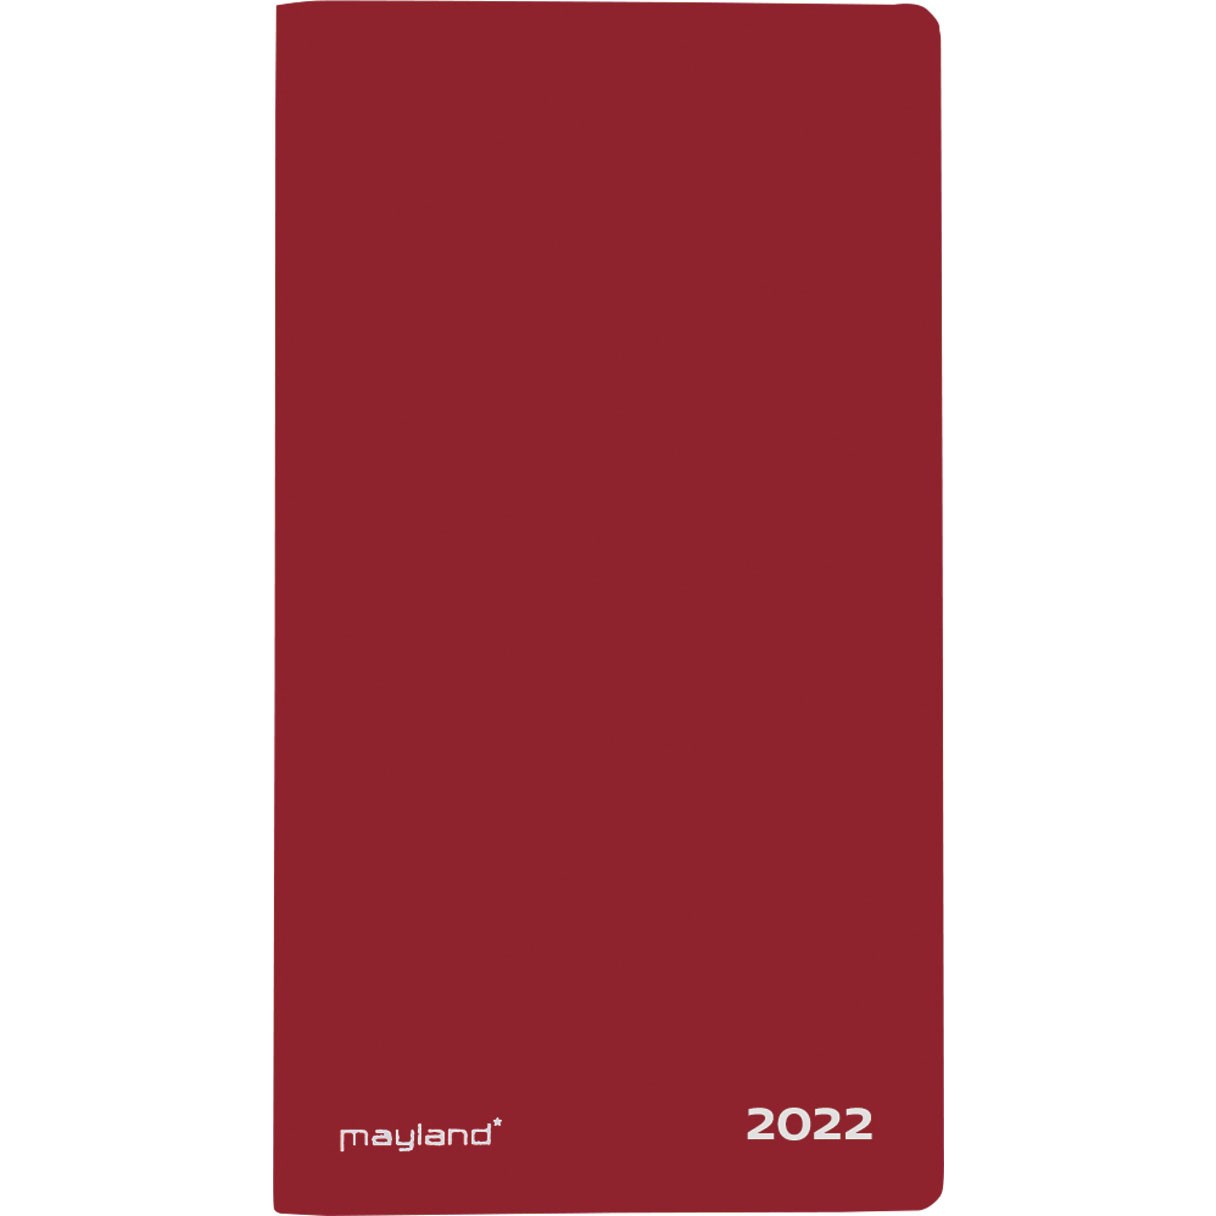 Mayland 2022 22090010 indexplanner 17x9,5cm rød